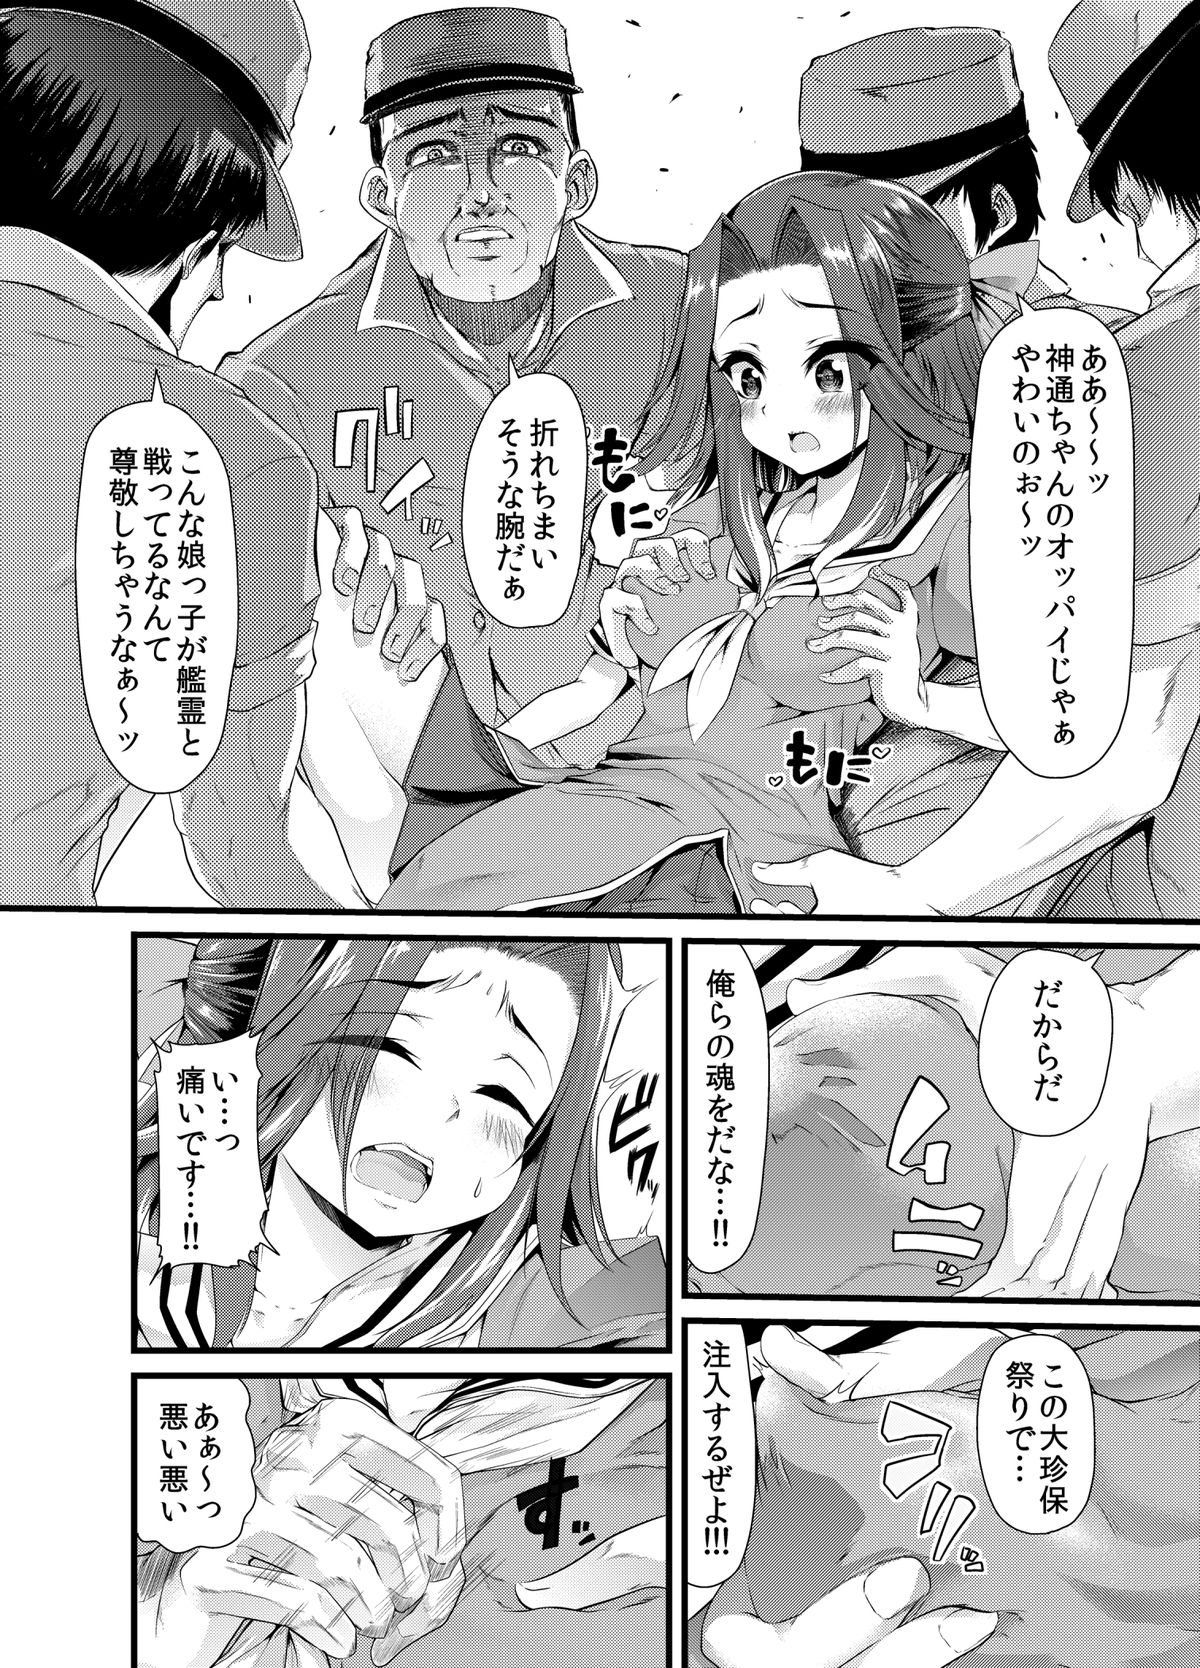 DL_manga_05 j